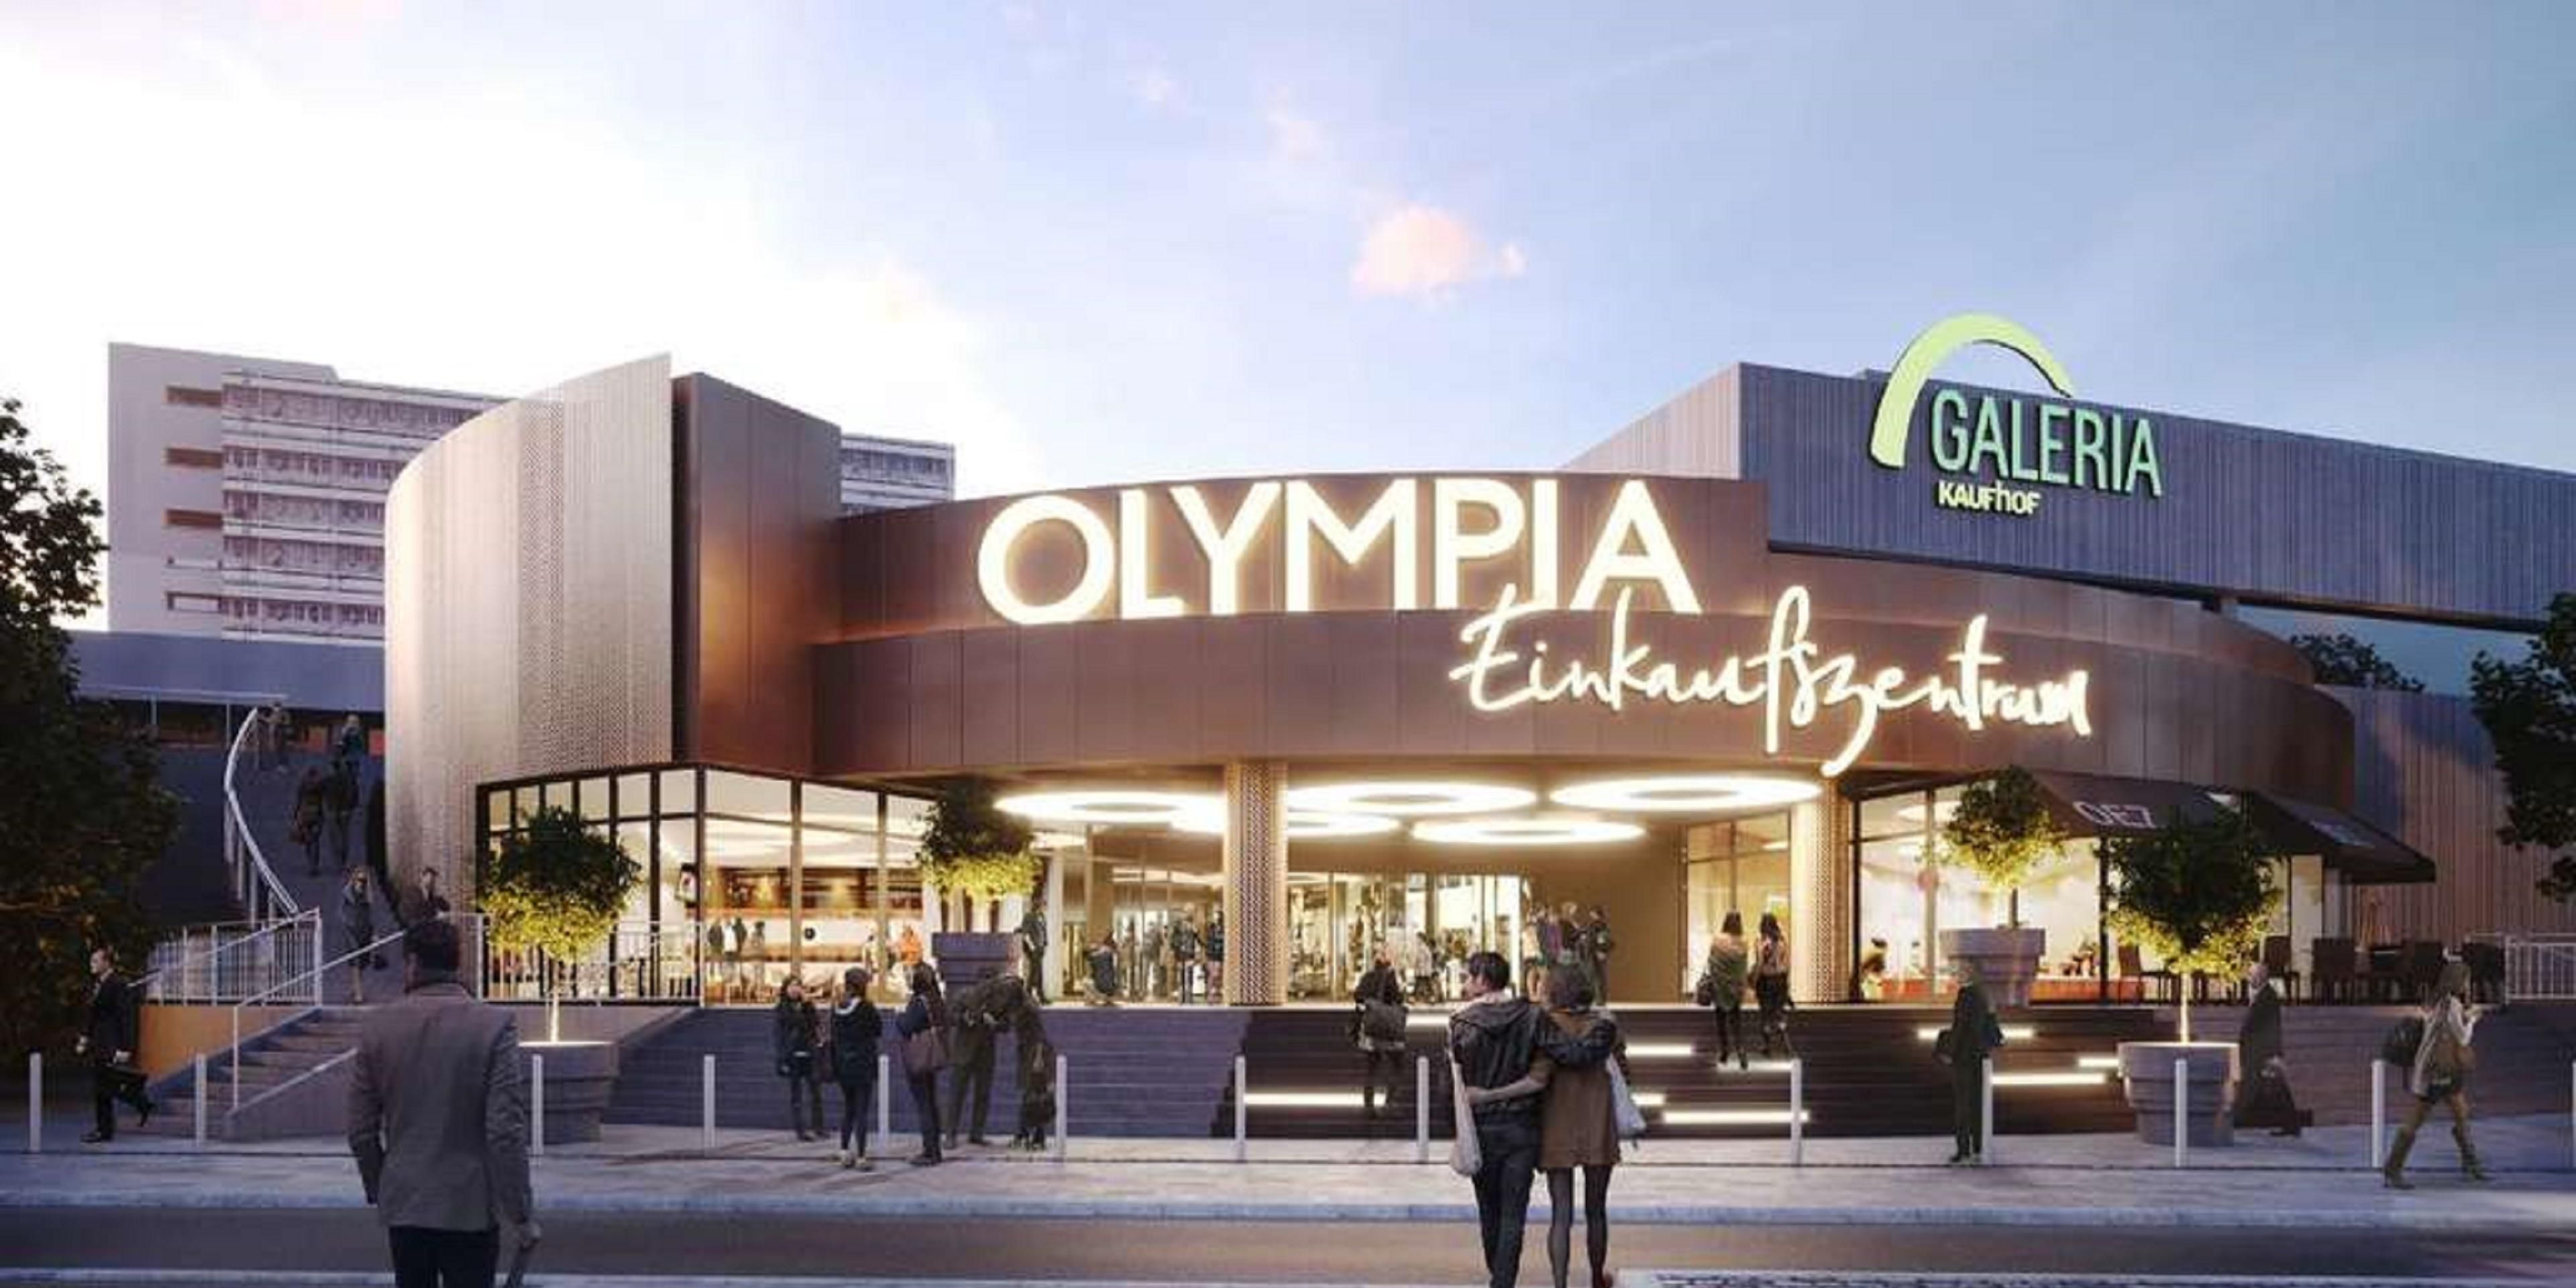 Genießen Sie einen entspannten Shopping Tag im nur 5 Gehminuten entfernten 
Olympia- Einkaufszentrum und besuchen Sie die knapp 130 Shops und Gastrobetriebe.